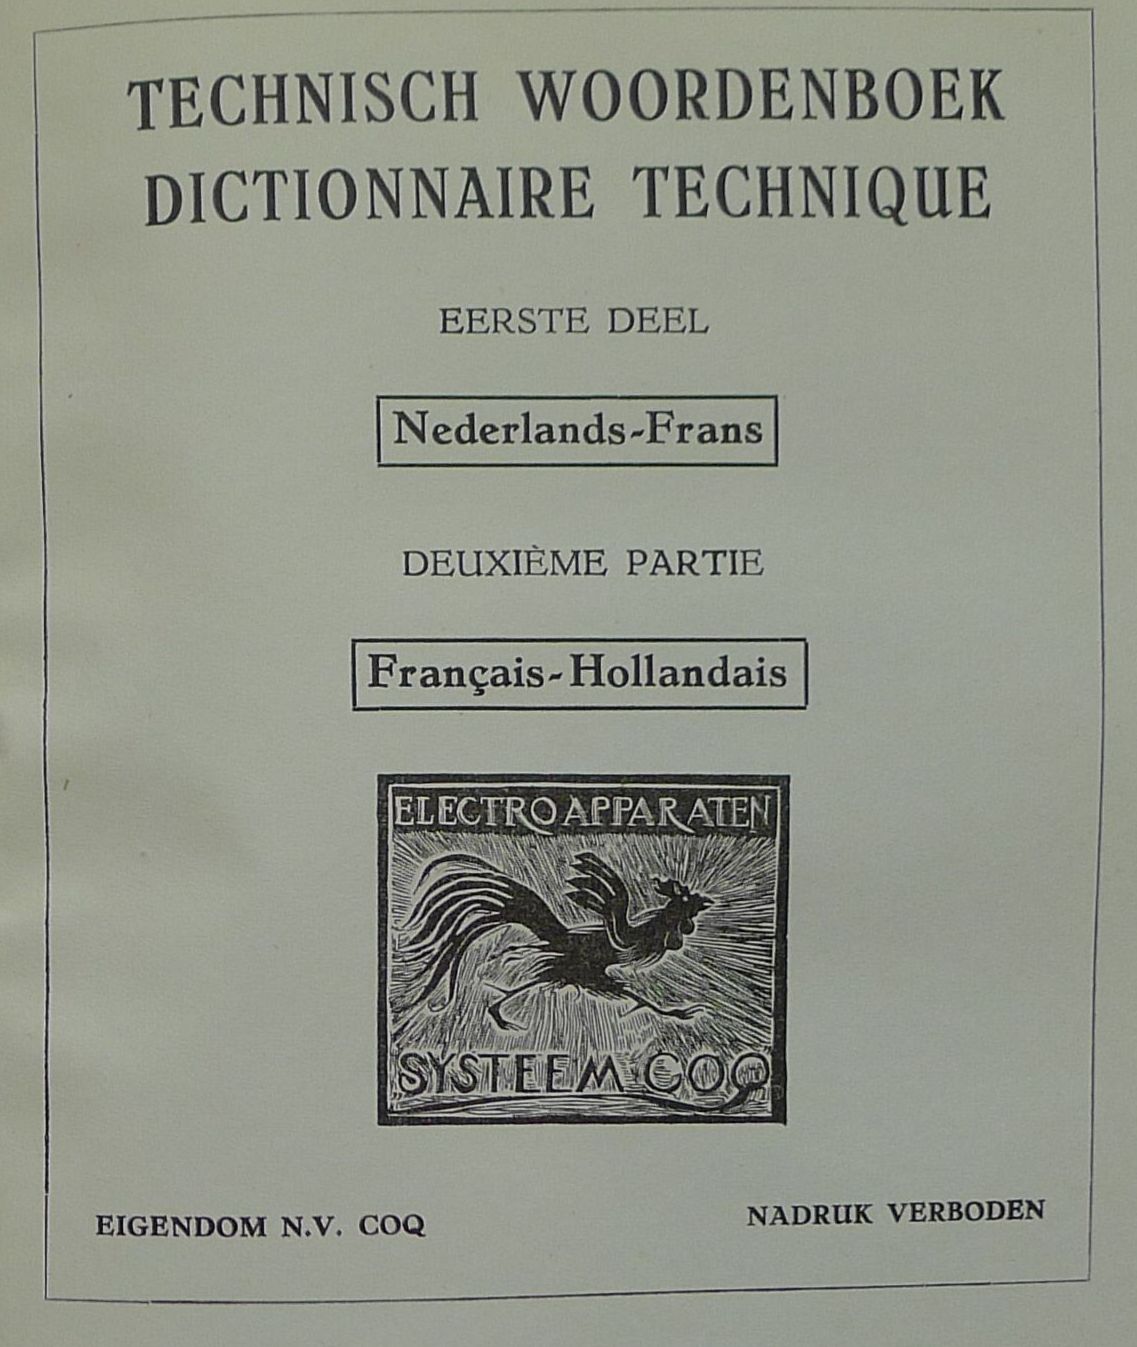 Technisch woordenboek Fr-NL/NL-Fr uitgegeven door Coq Utrecht (1954)